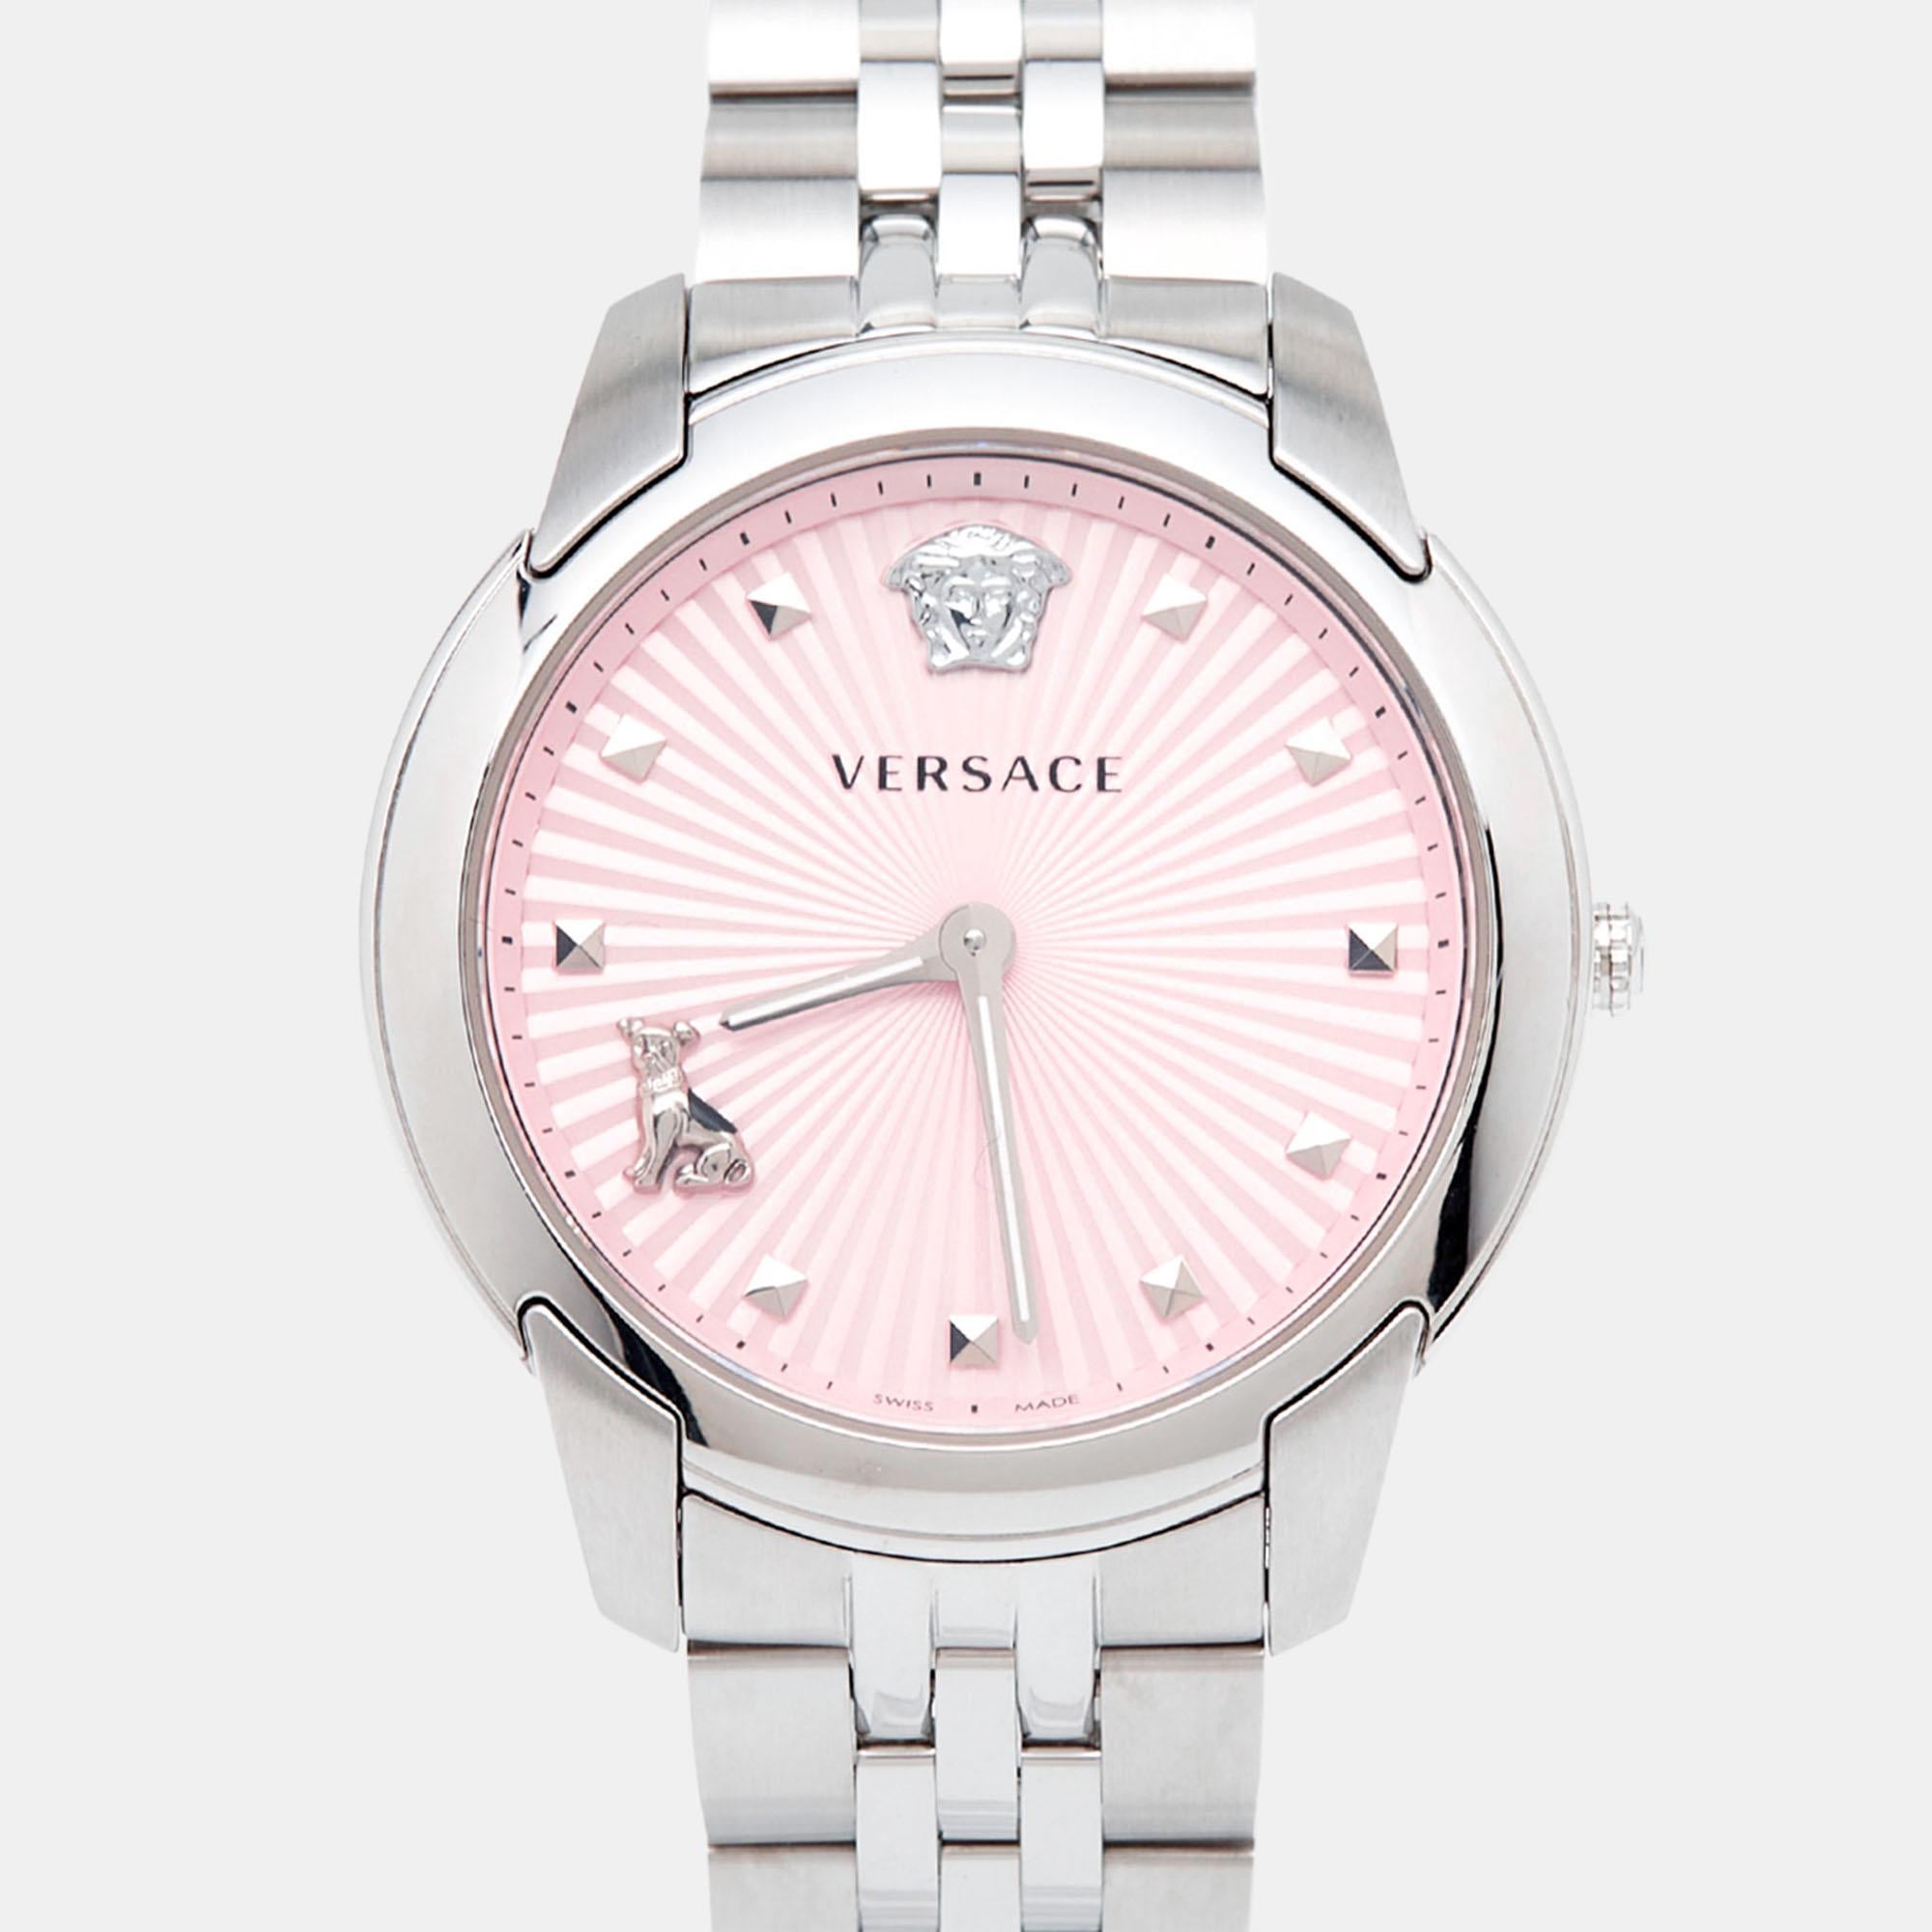 Découvrez l'allure intemporelle de la montre-bracelet pour femme Versace Audrey VELR00419. Alliant harmonieusement féminité et fonctionnalité, ce garde-temps est doté d'un design remarquable en acier inoxydable. Son cadran rose épuré présente des